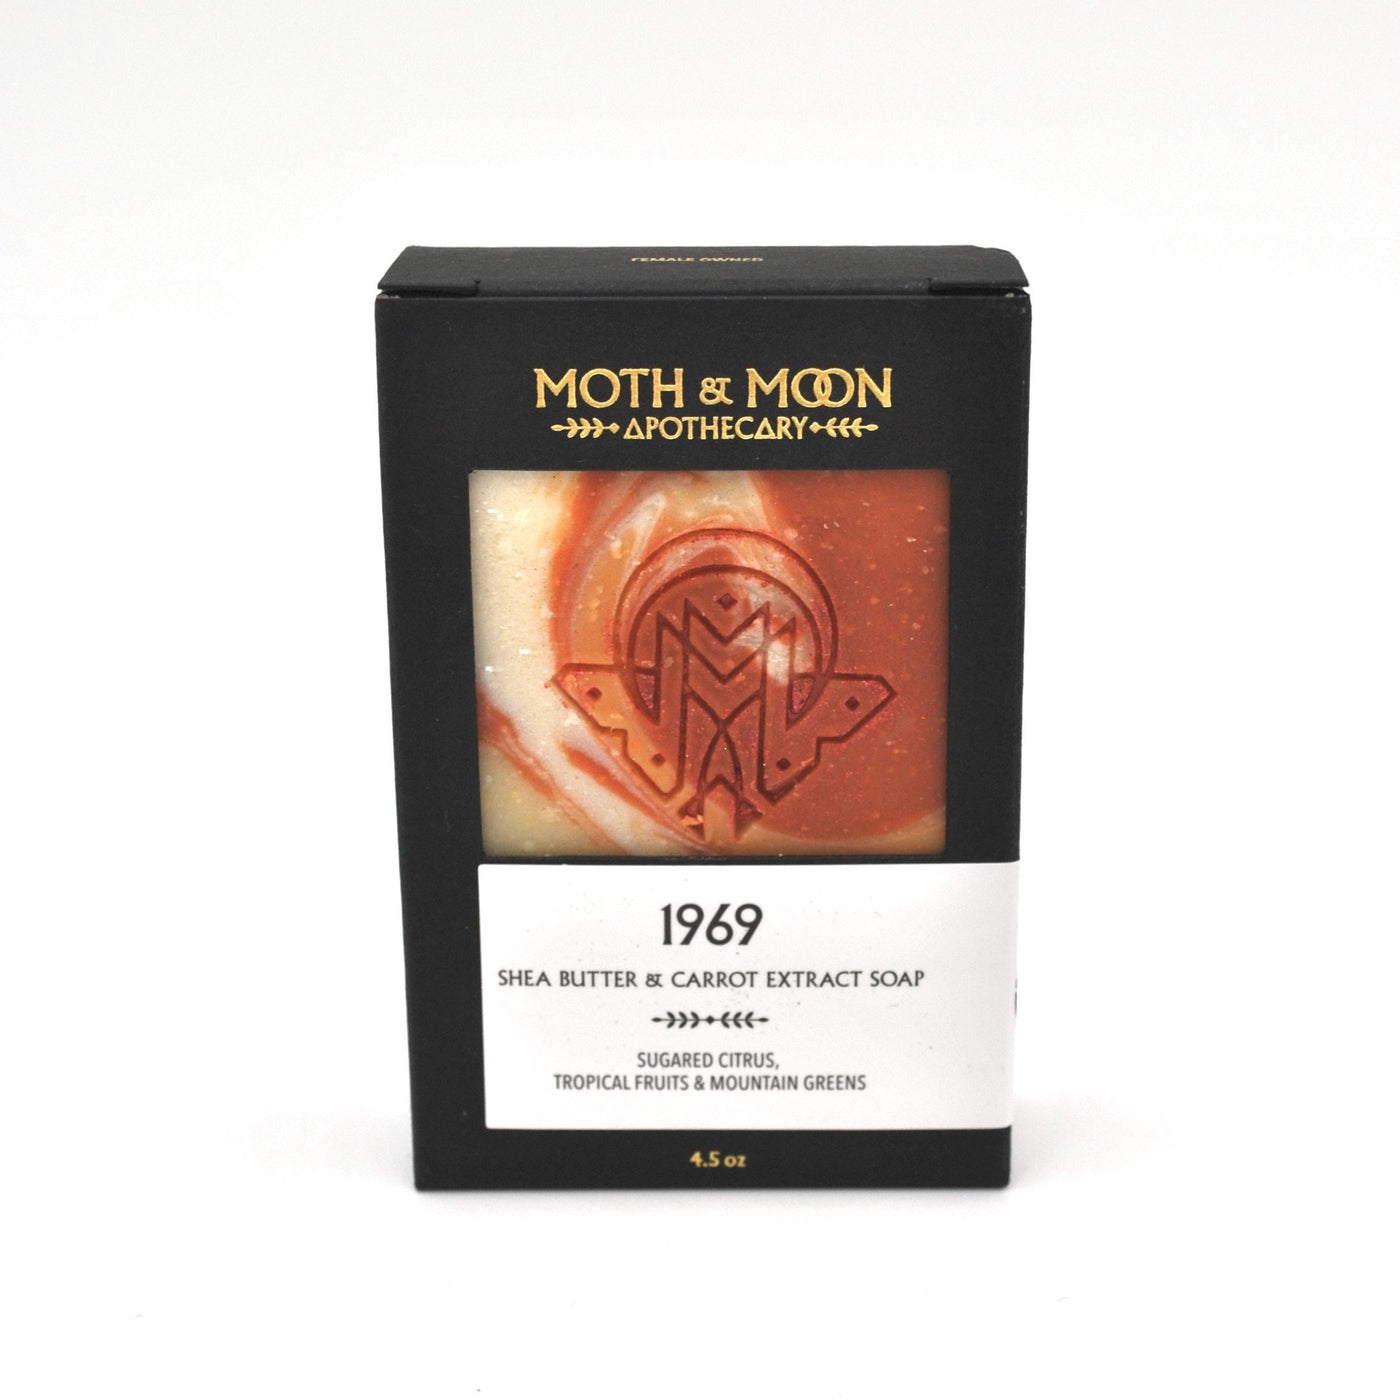 Moth & Moon Apothecary - 1969 Soap Bar